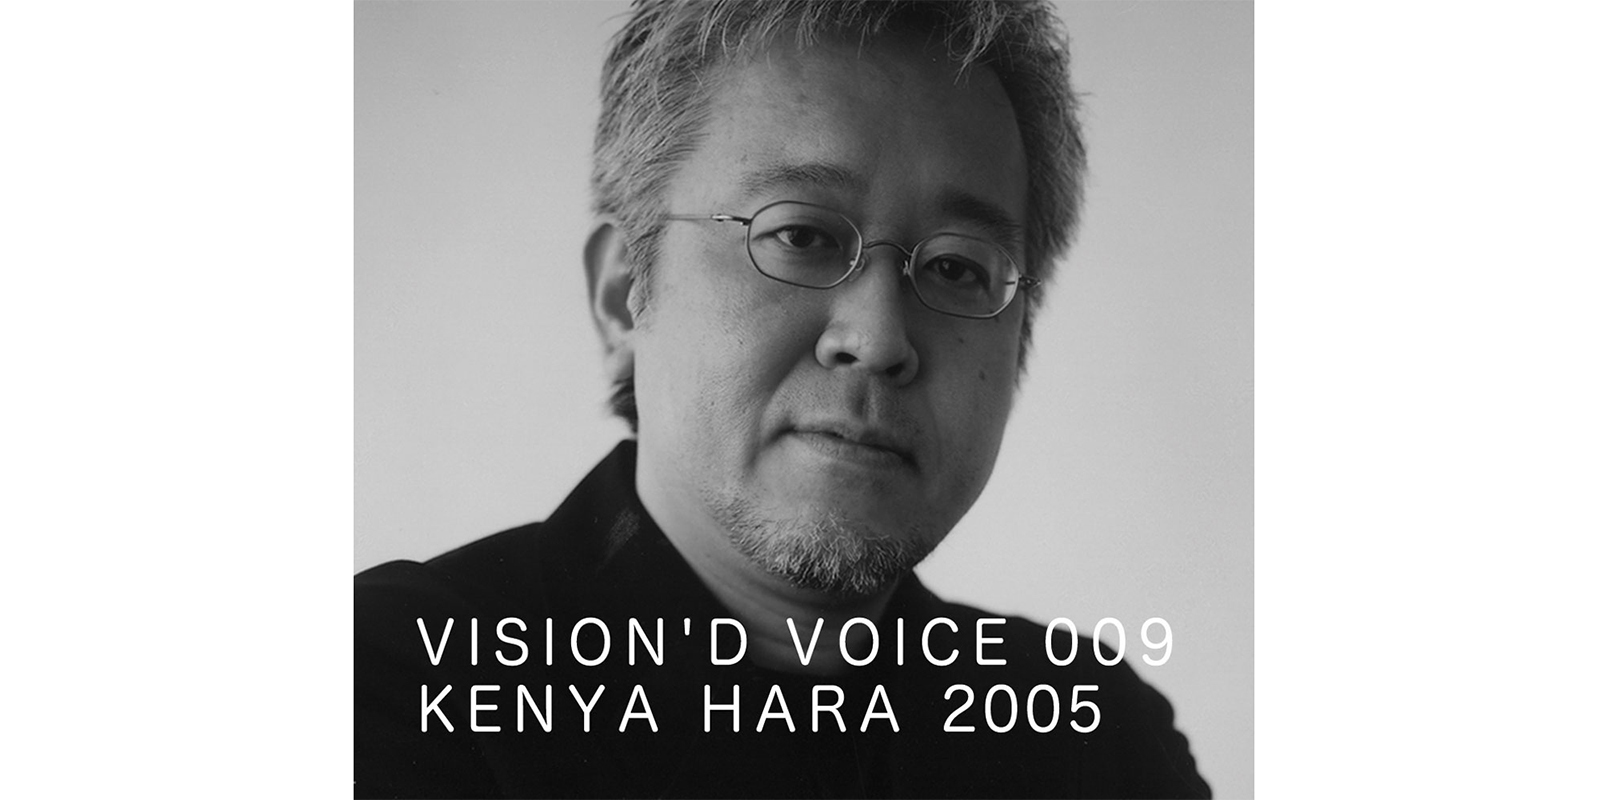 VISION'D VOICE・9・KENYA HARA 2005